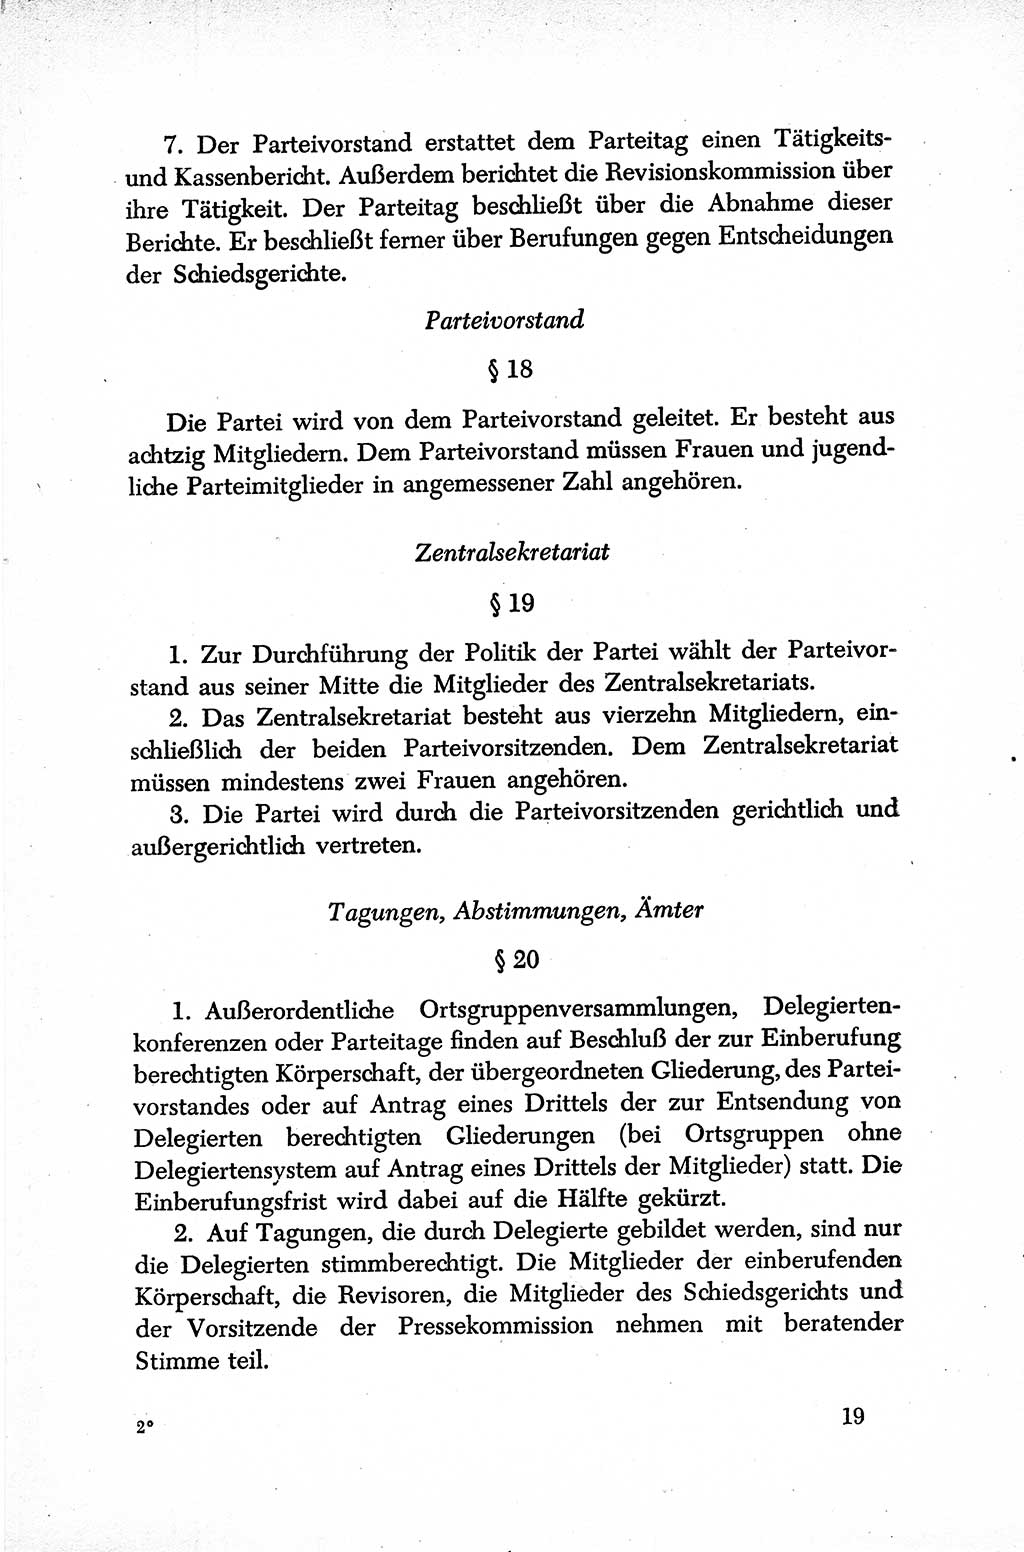 Dokumente der Sozialistischen Einheitspartei Deutschlands (SED) [Sowjetische Besatzungszone (SBZ) Deutschlands] 1946-1948, Seite 19 (Dok. SED SBZ Dtl. 1946-1948, S. 19)